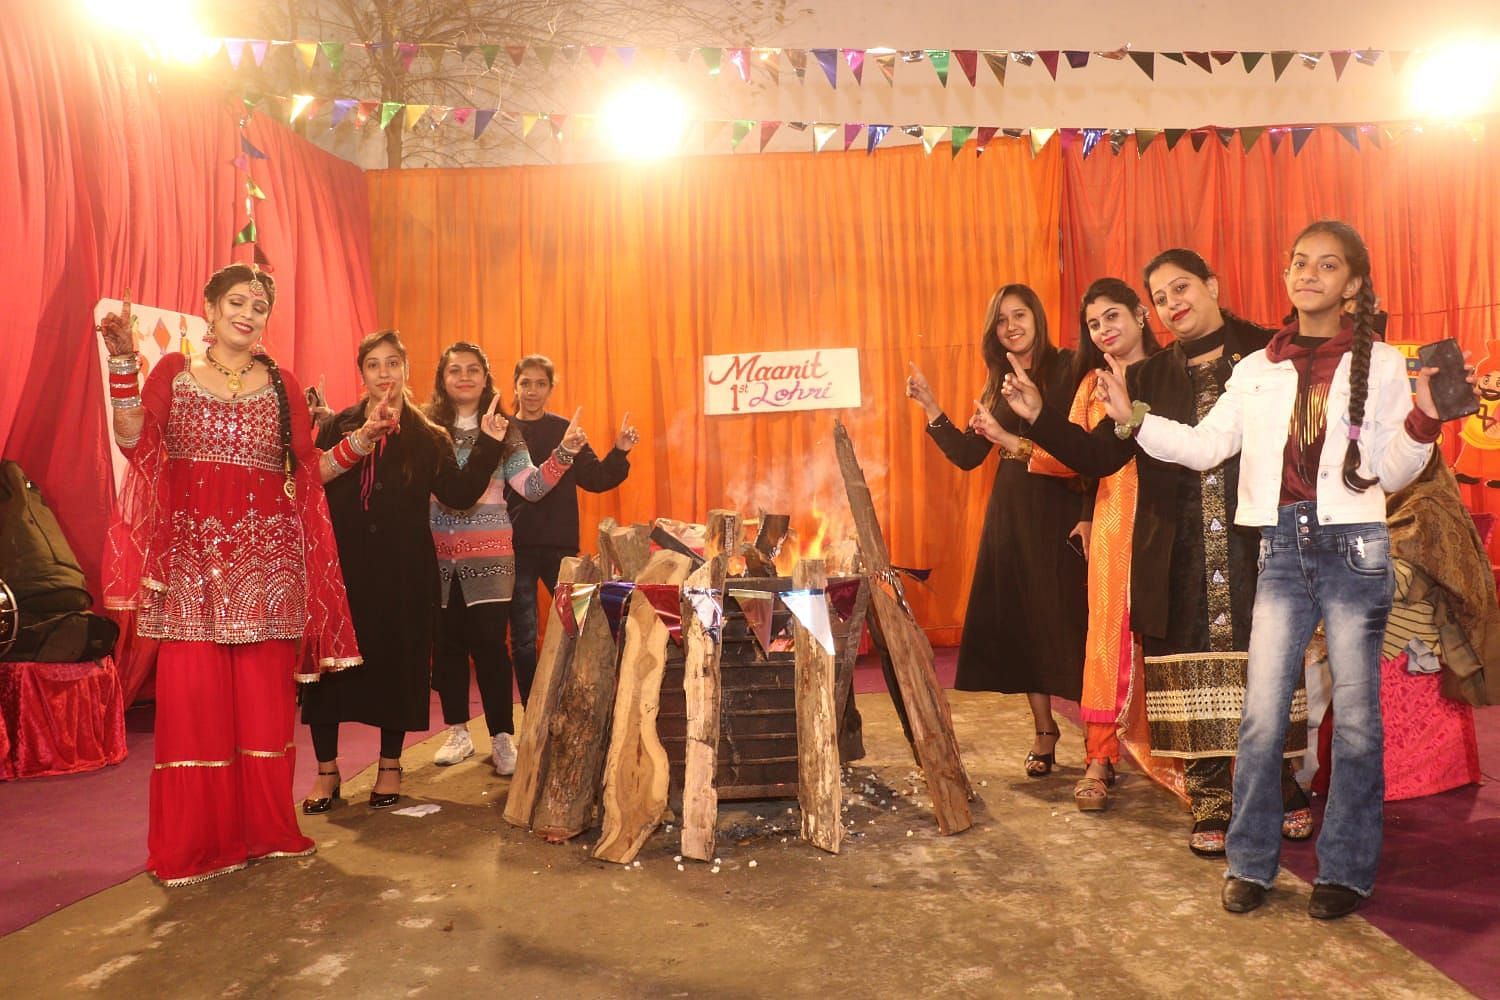 Des membres de la communauté sikhe célèbrent Lohri à Kashipur jeudi soir.  conversation